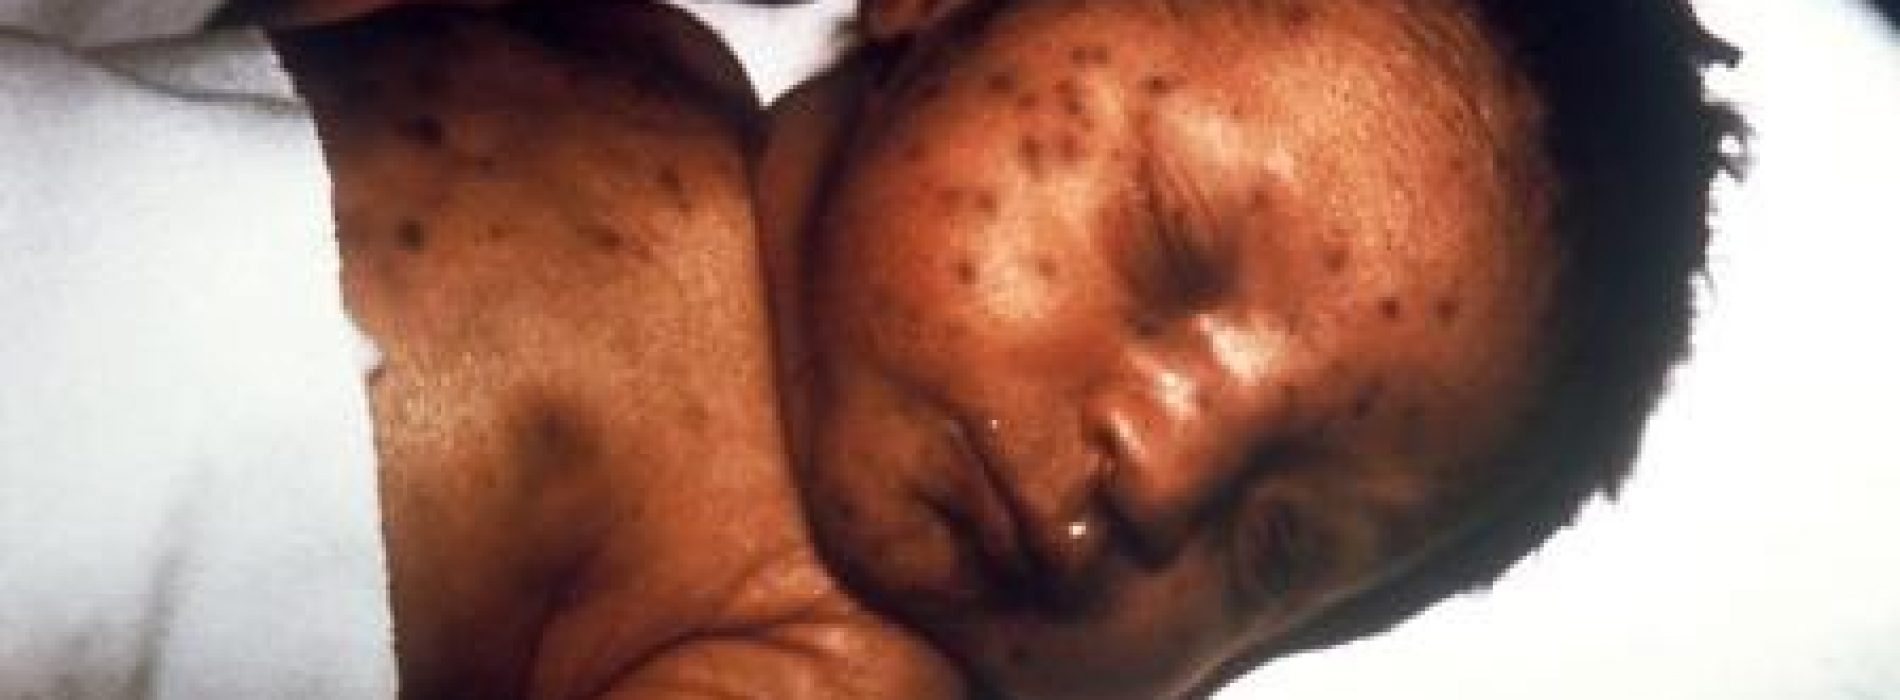 Americas eliminate measles